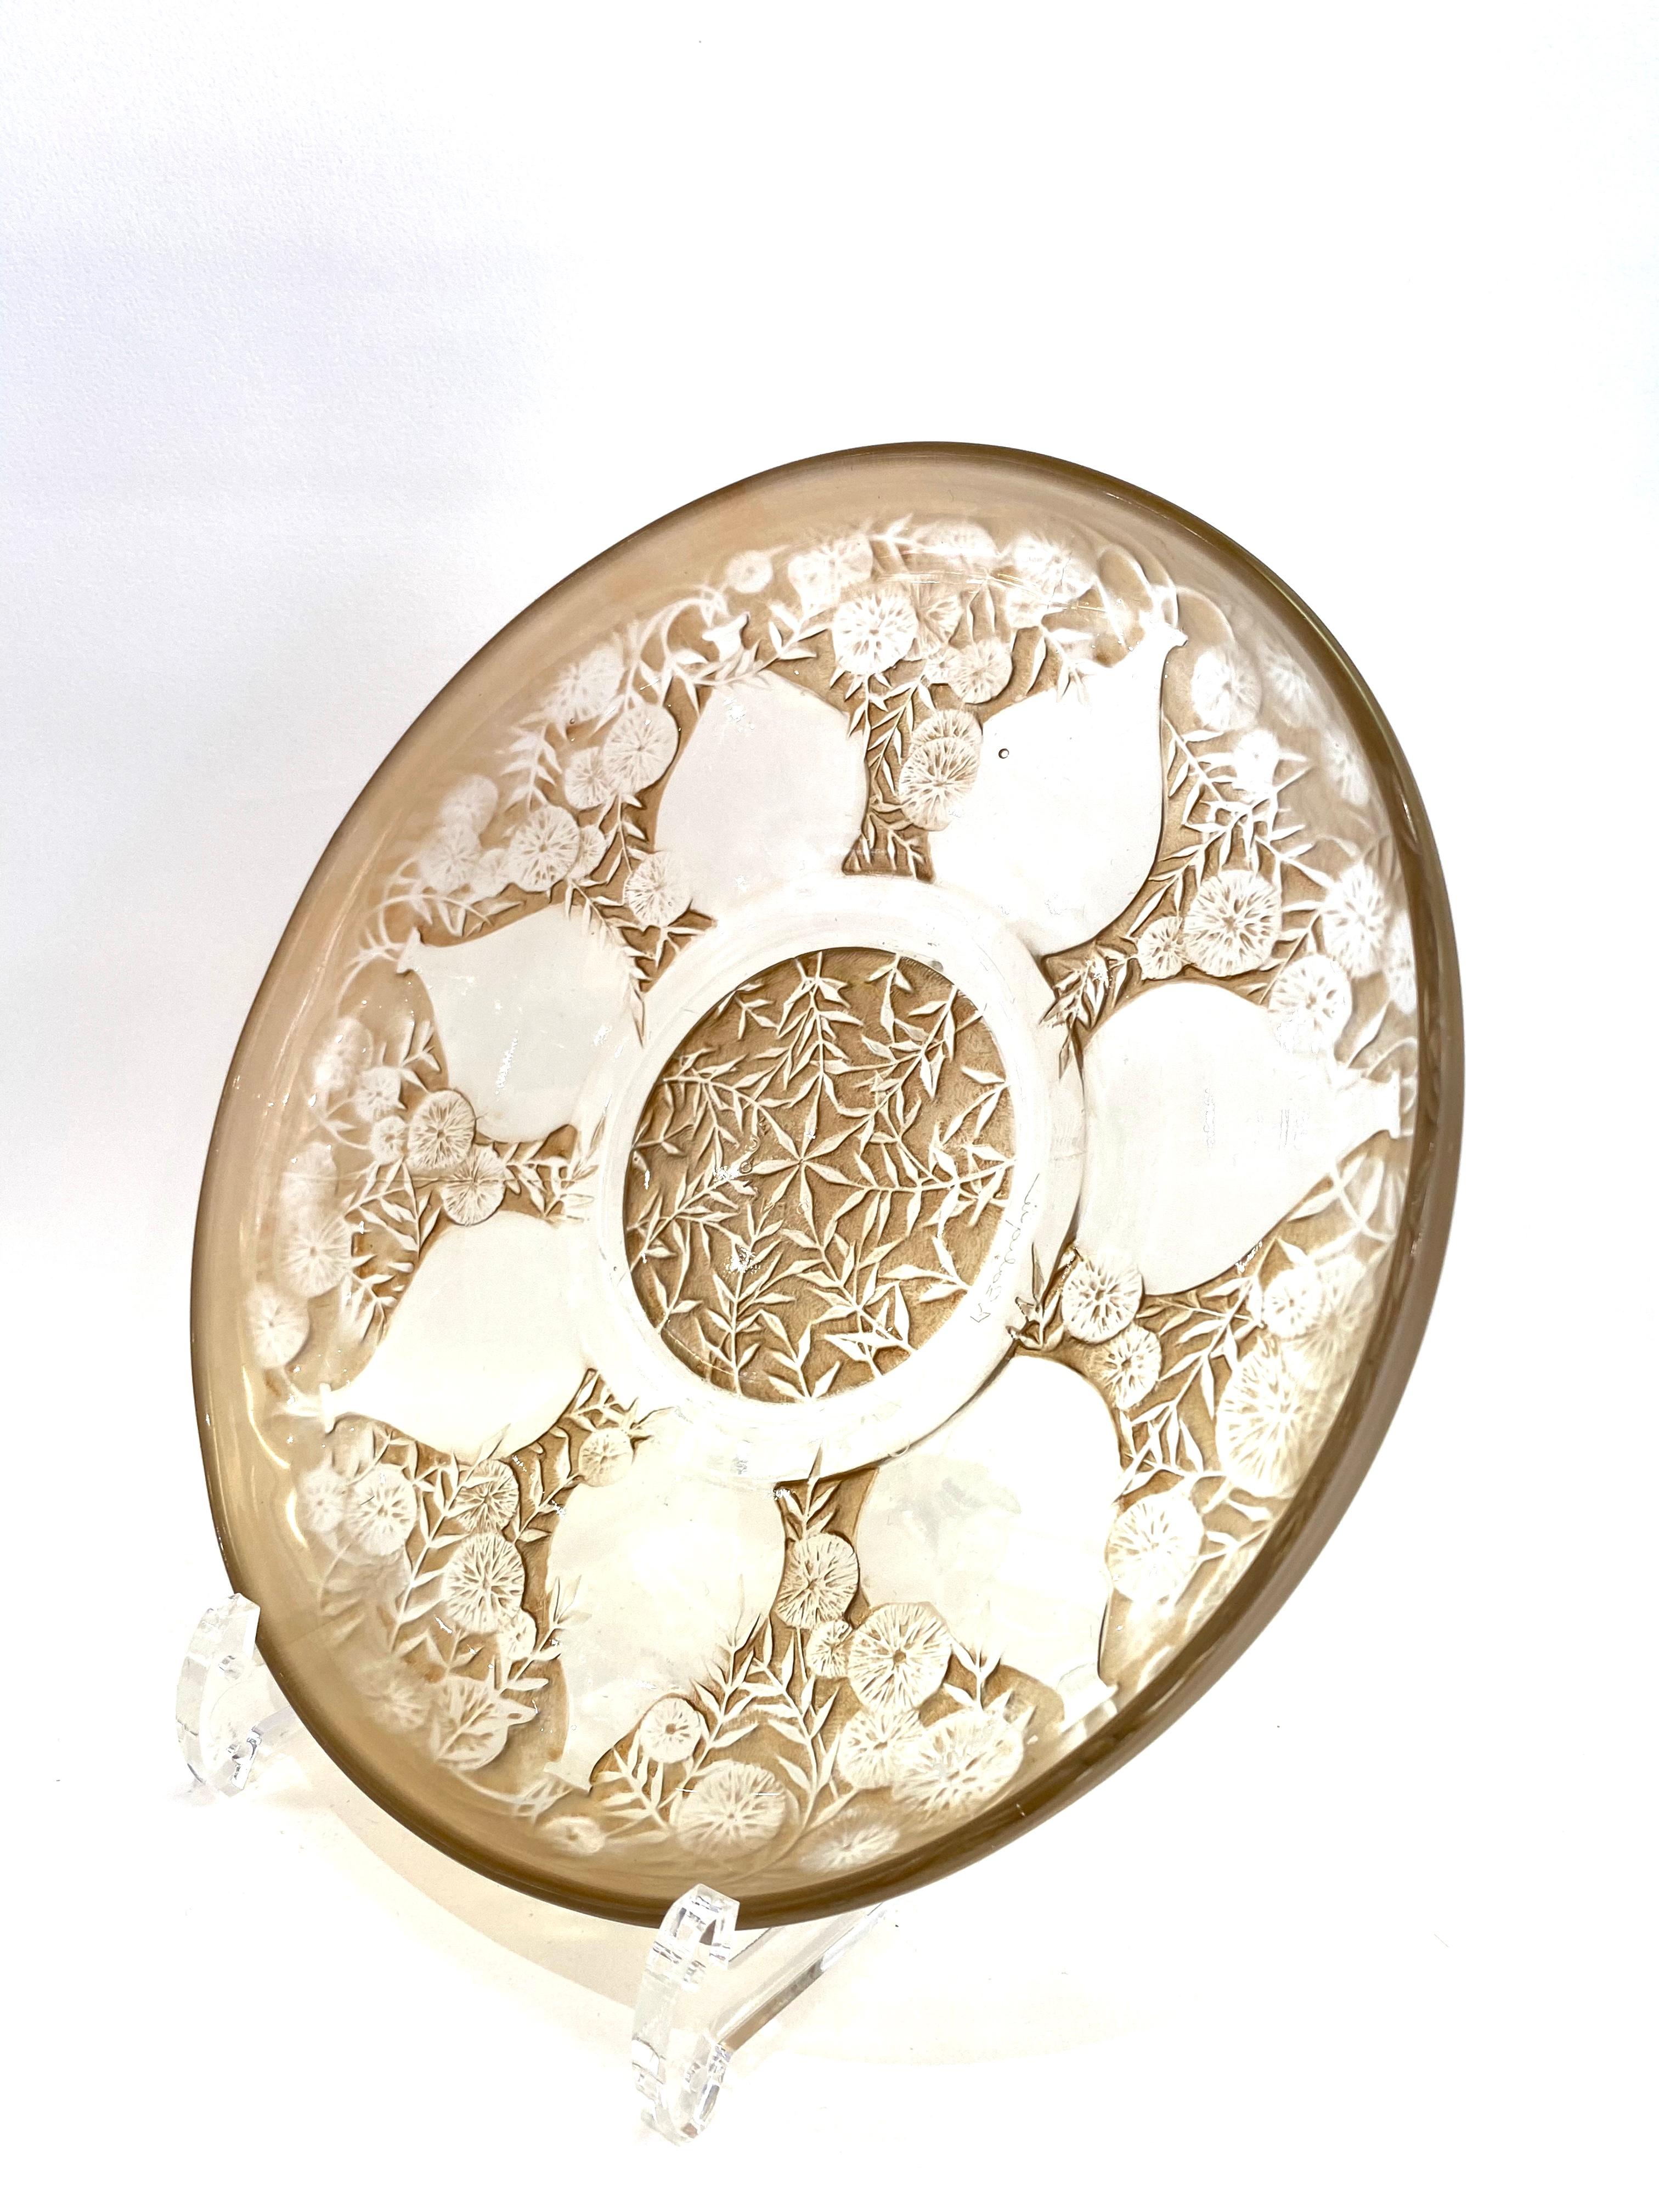 European 1921 Rene Lalique Vases Glass Plates Low Bowls Sepia Patina R.Lalique Set of 6